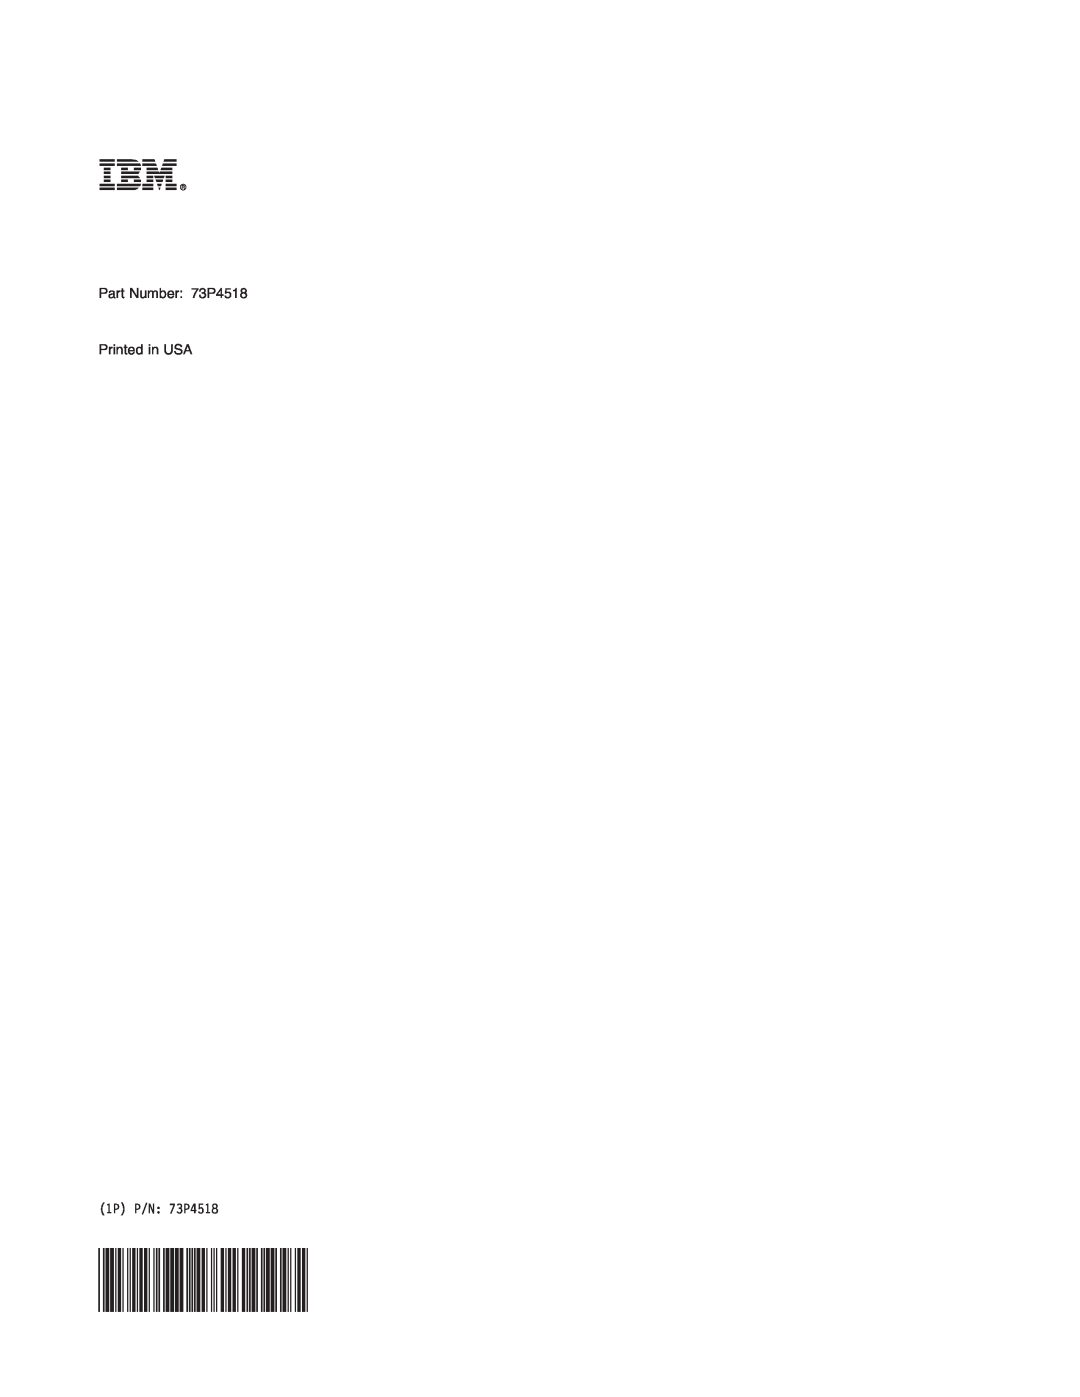 IBM manual Part Number 73P4518 Printed in USA, 1P P/N 73P4518 